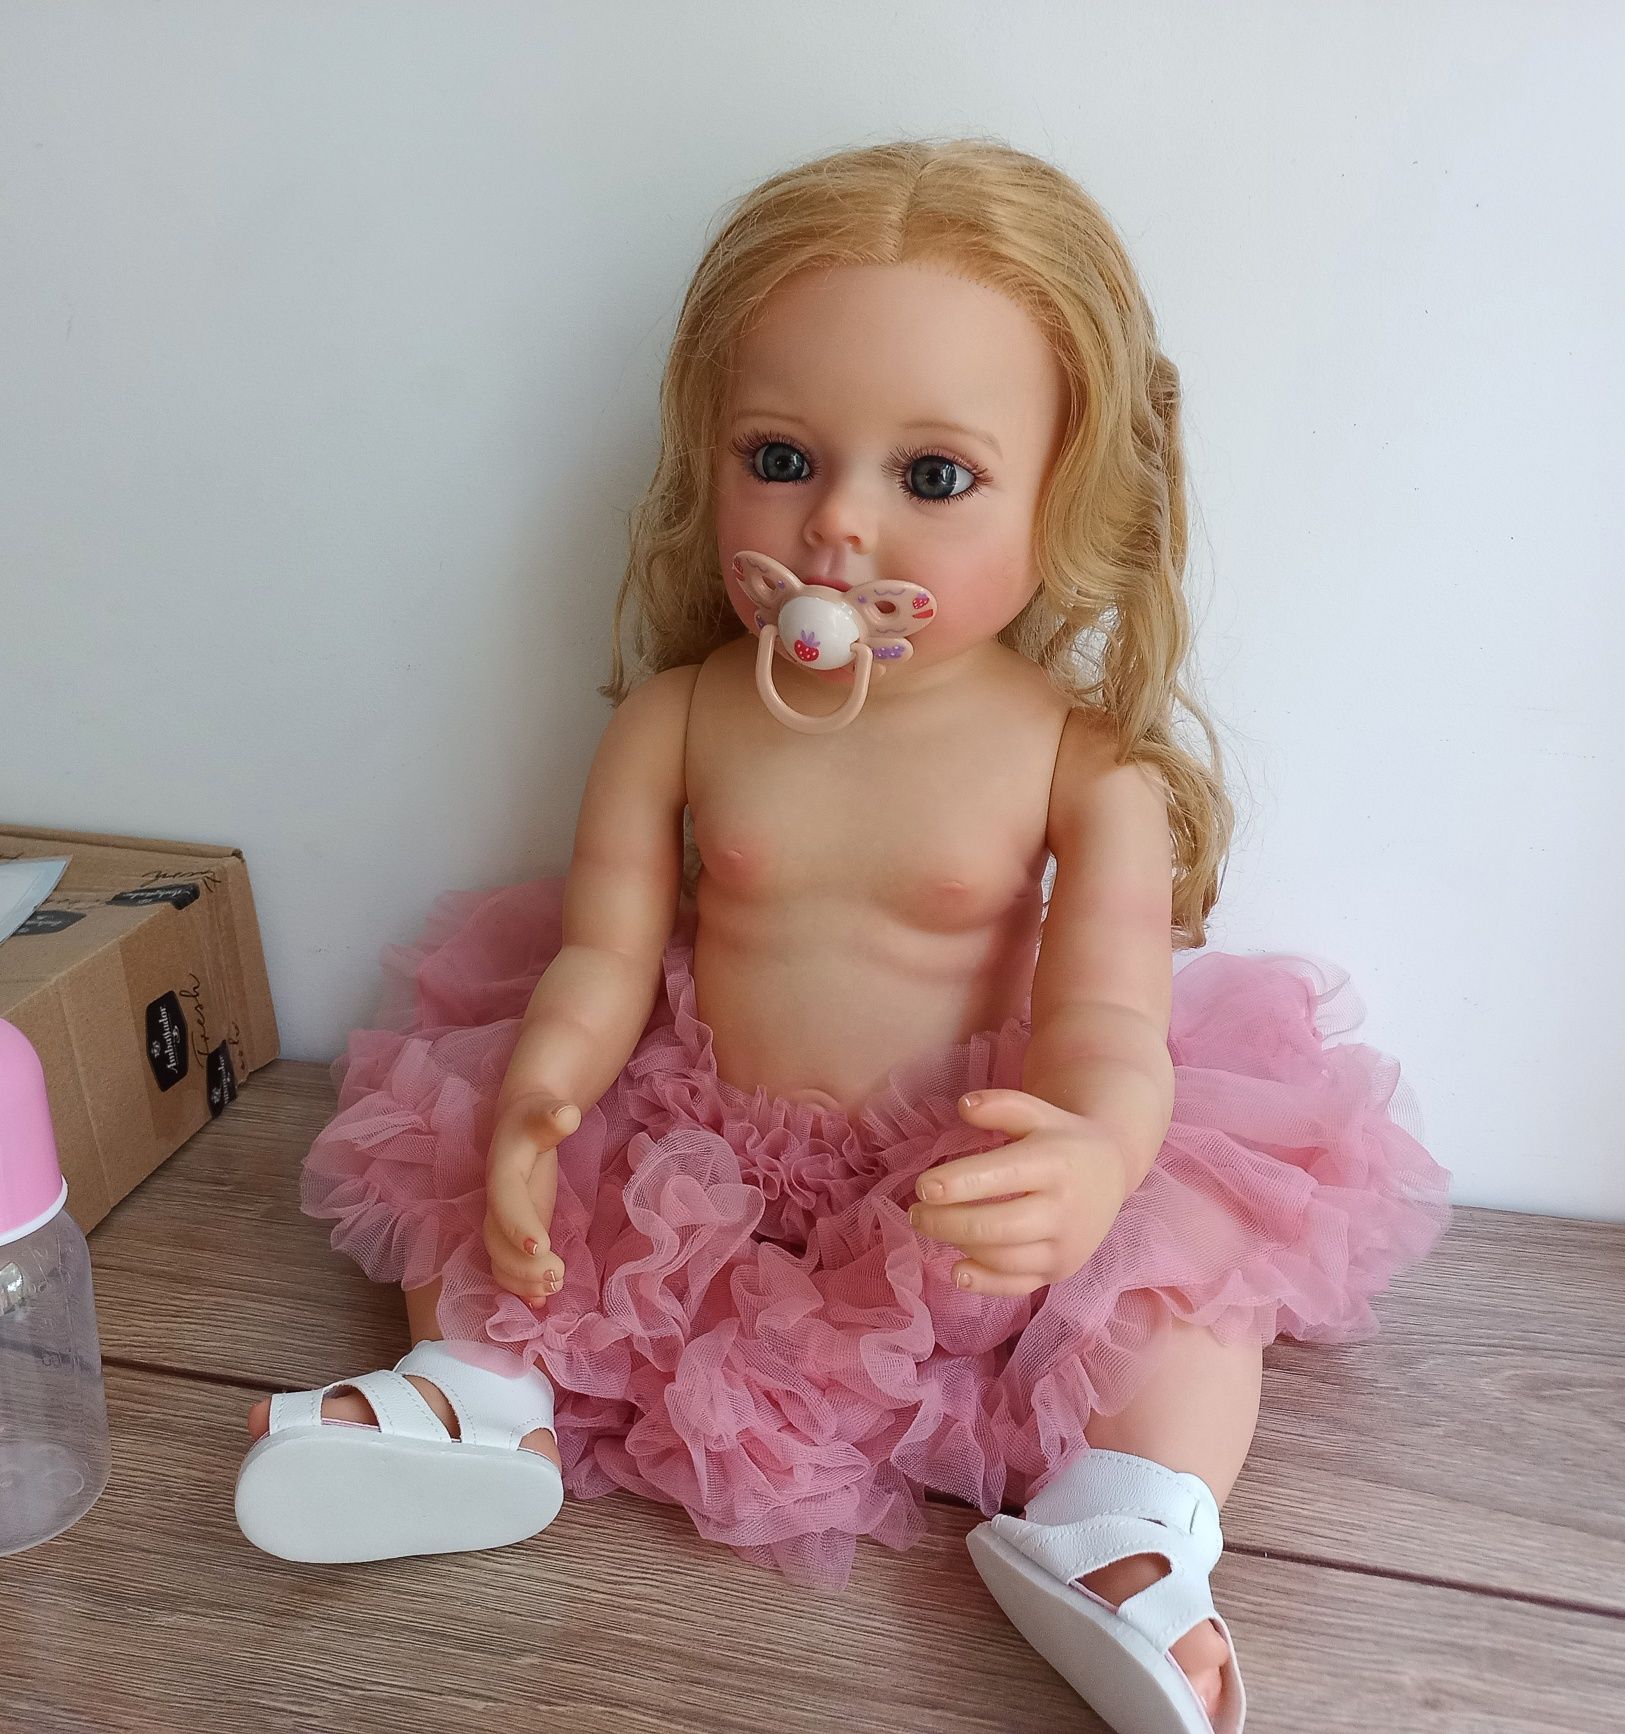 Полностью силиконовая реалистичная кукла реборн 55 см.Новая модель